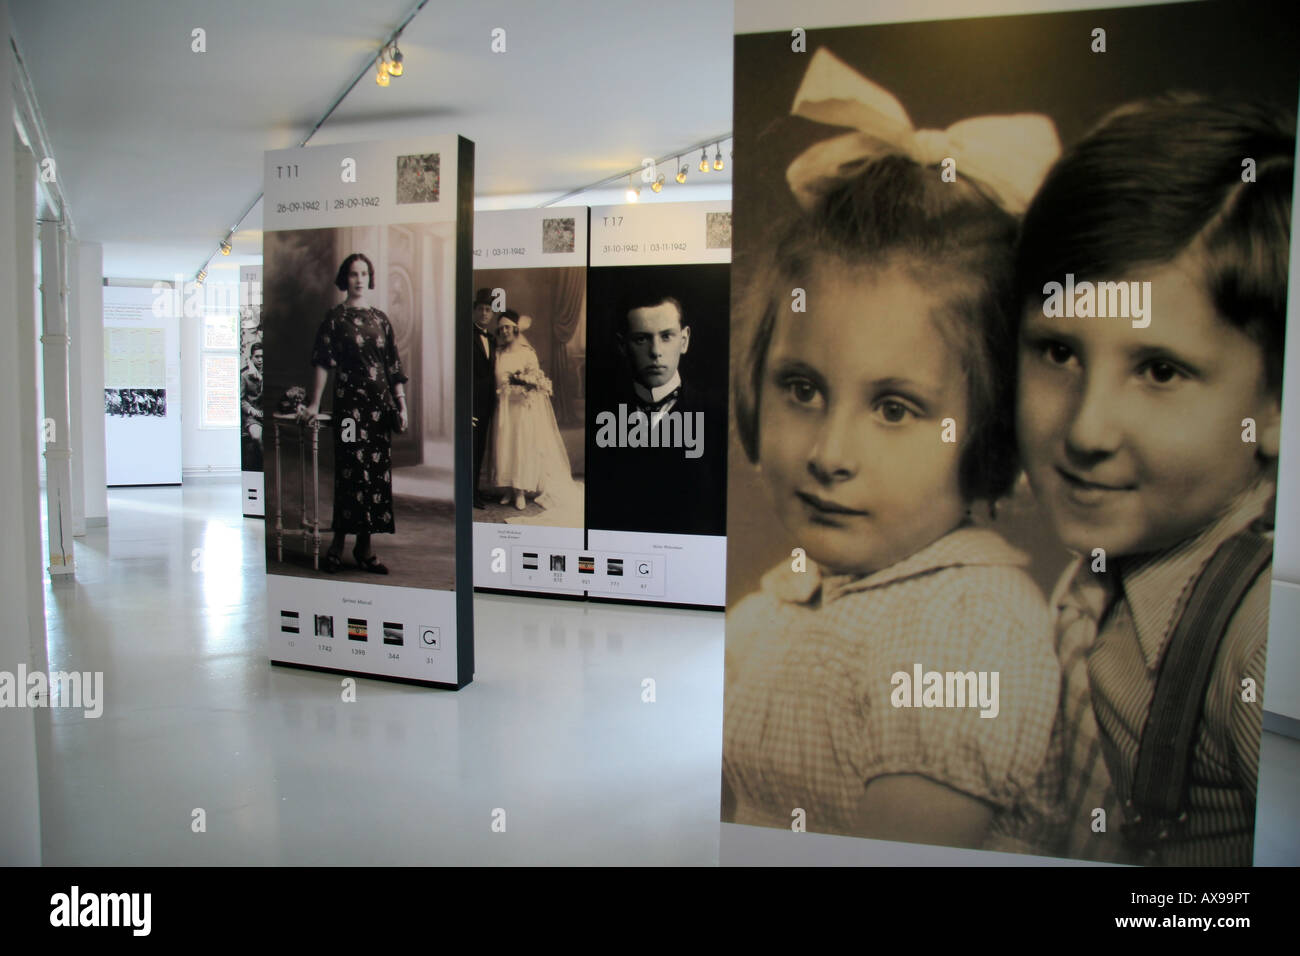 Große Anzeige von Bildern der Opfer des Holocaust in der belgischen Ausstellung Museum Auschwitz-Birkenau, Oswiecim, Polen. Stockfoto